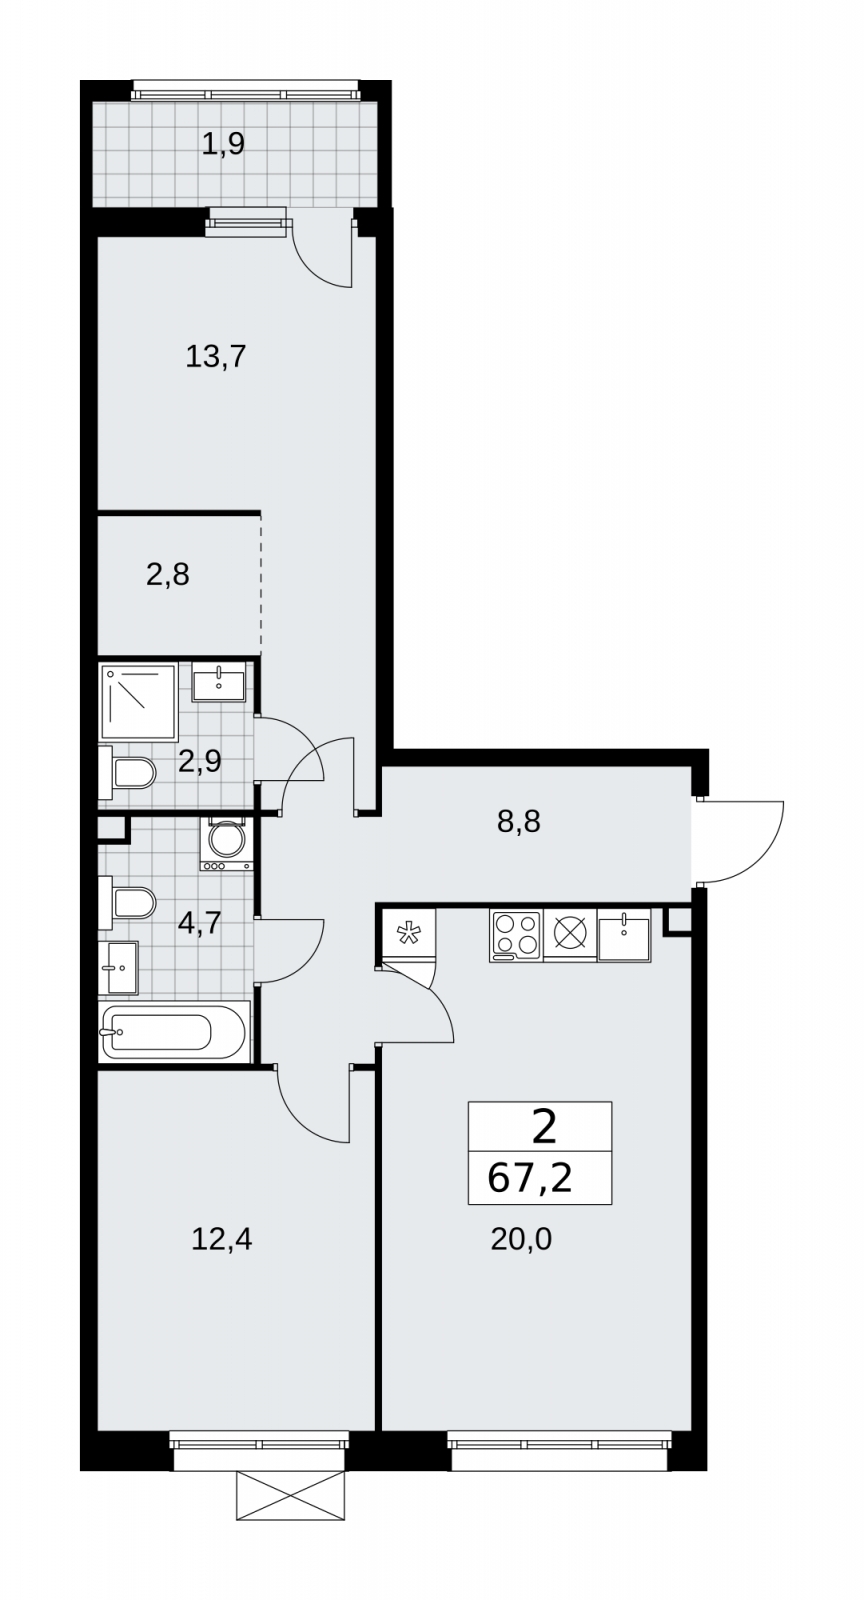 Продается просторная двухкомнатная квартира в новом ЖК, метро рядом